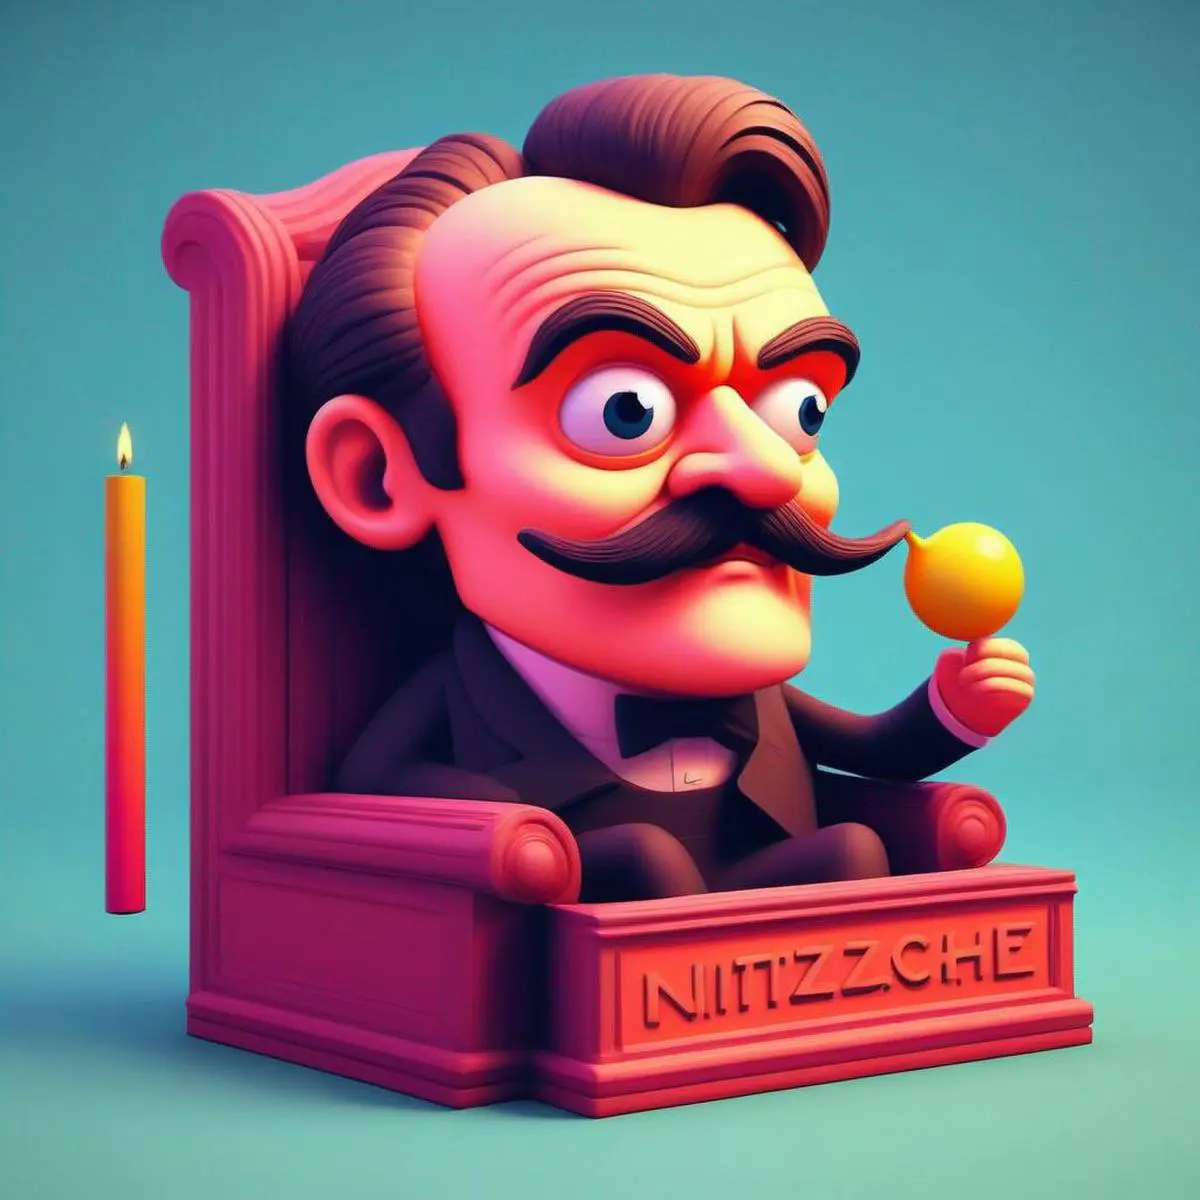 Nietzsche puns